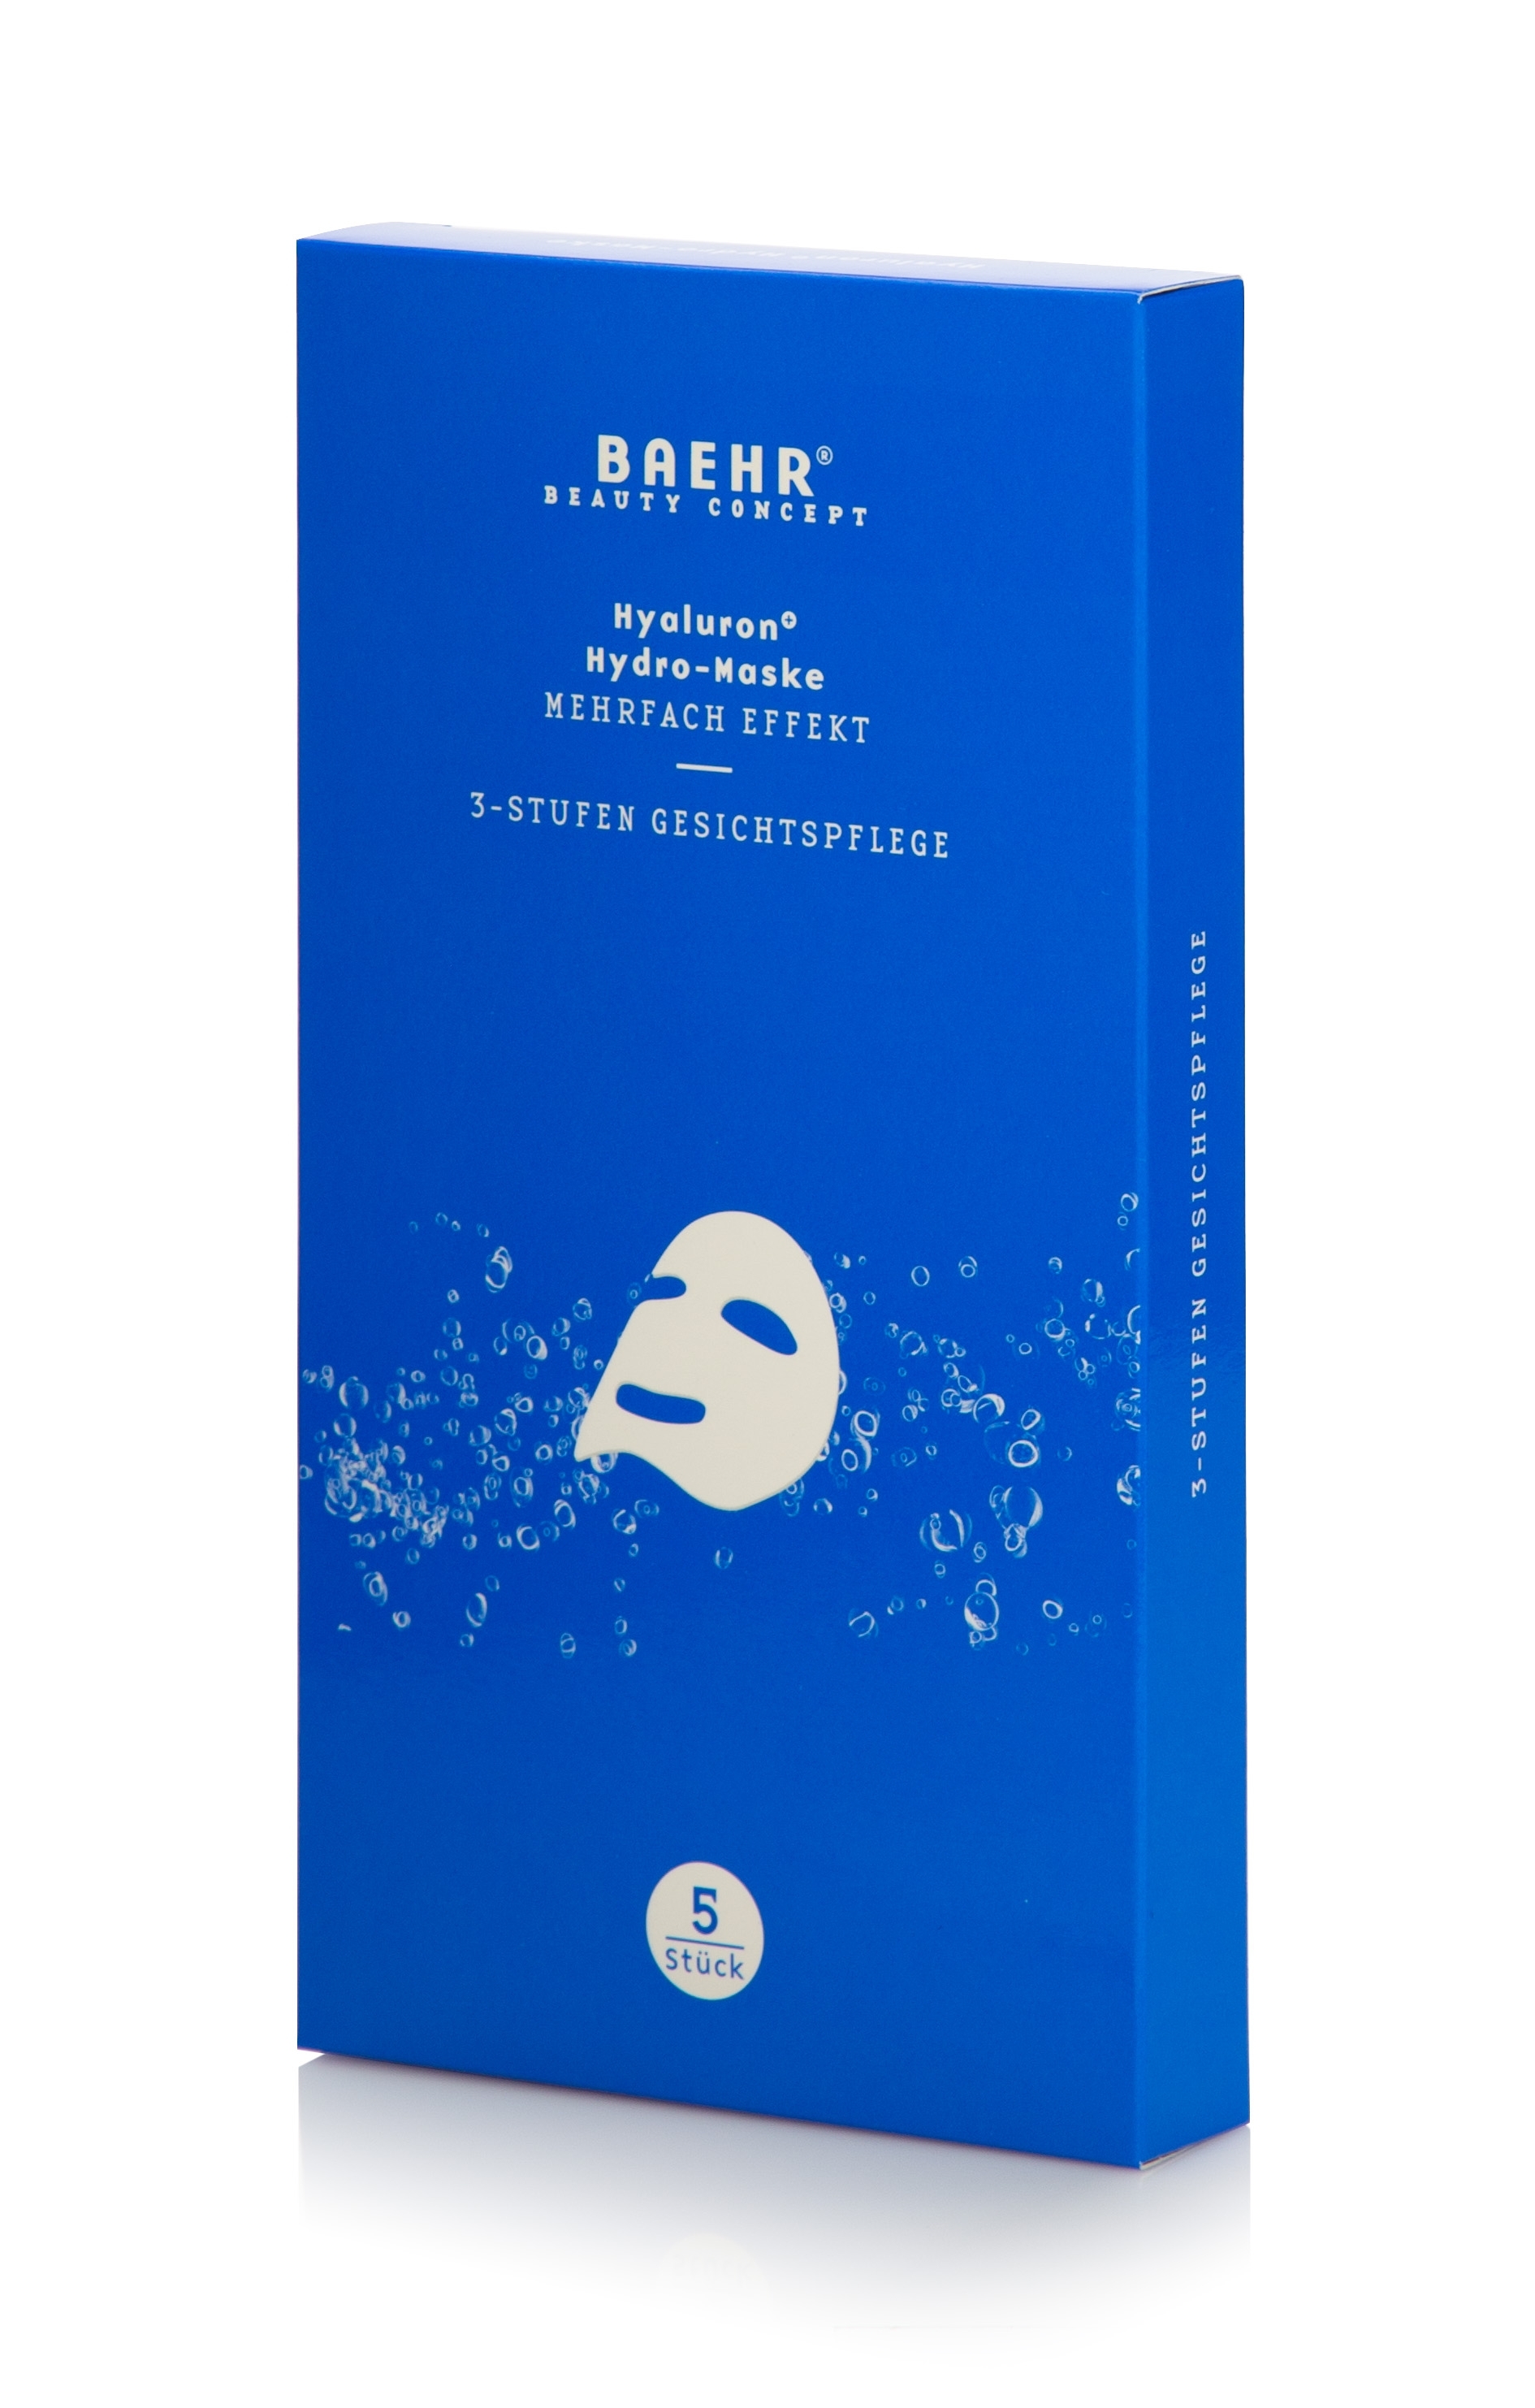 BAEHR Hyaluron+ - Vliesmaske, 3-Stufen Gesichtspflege | 5 Stück 